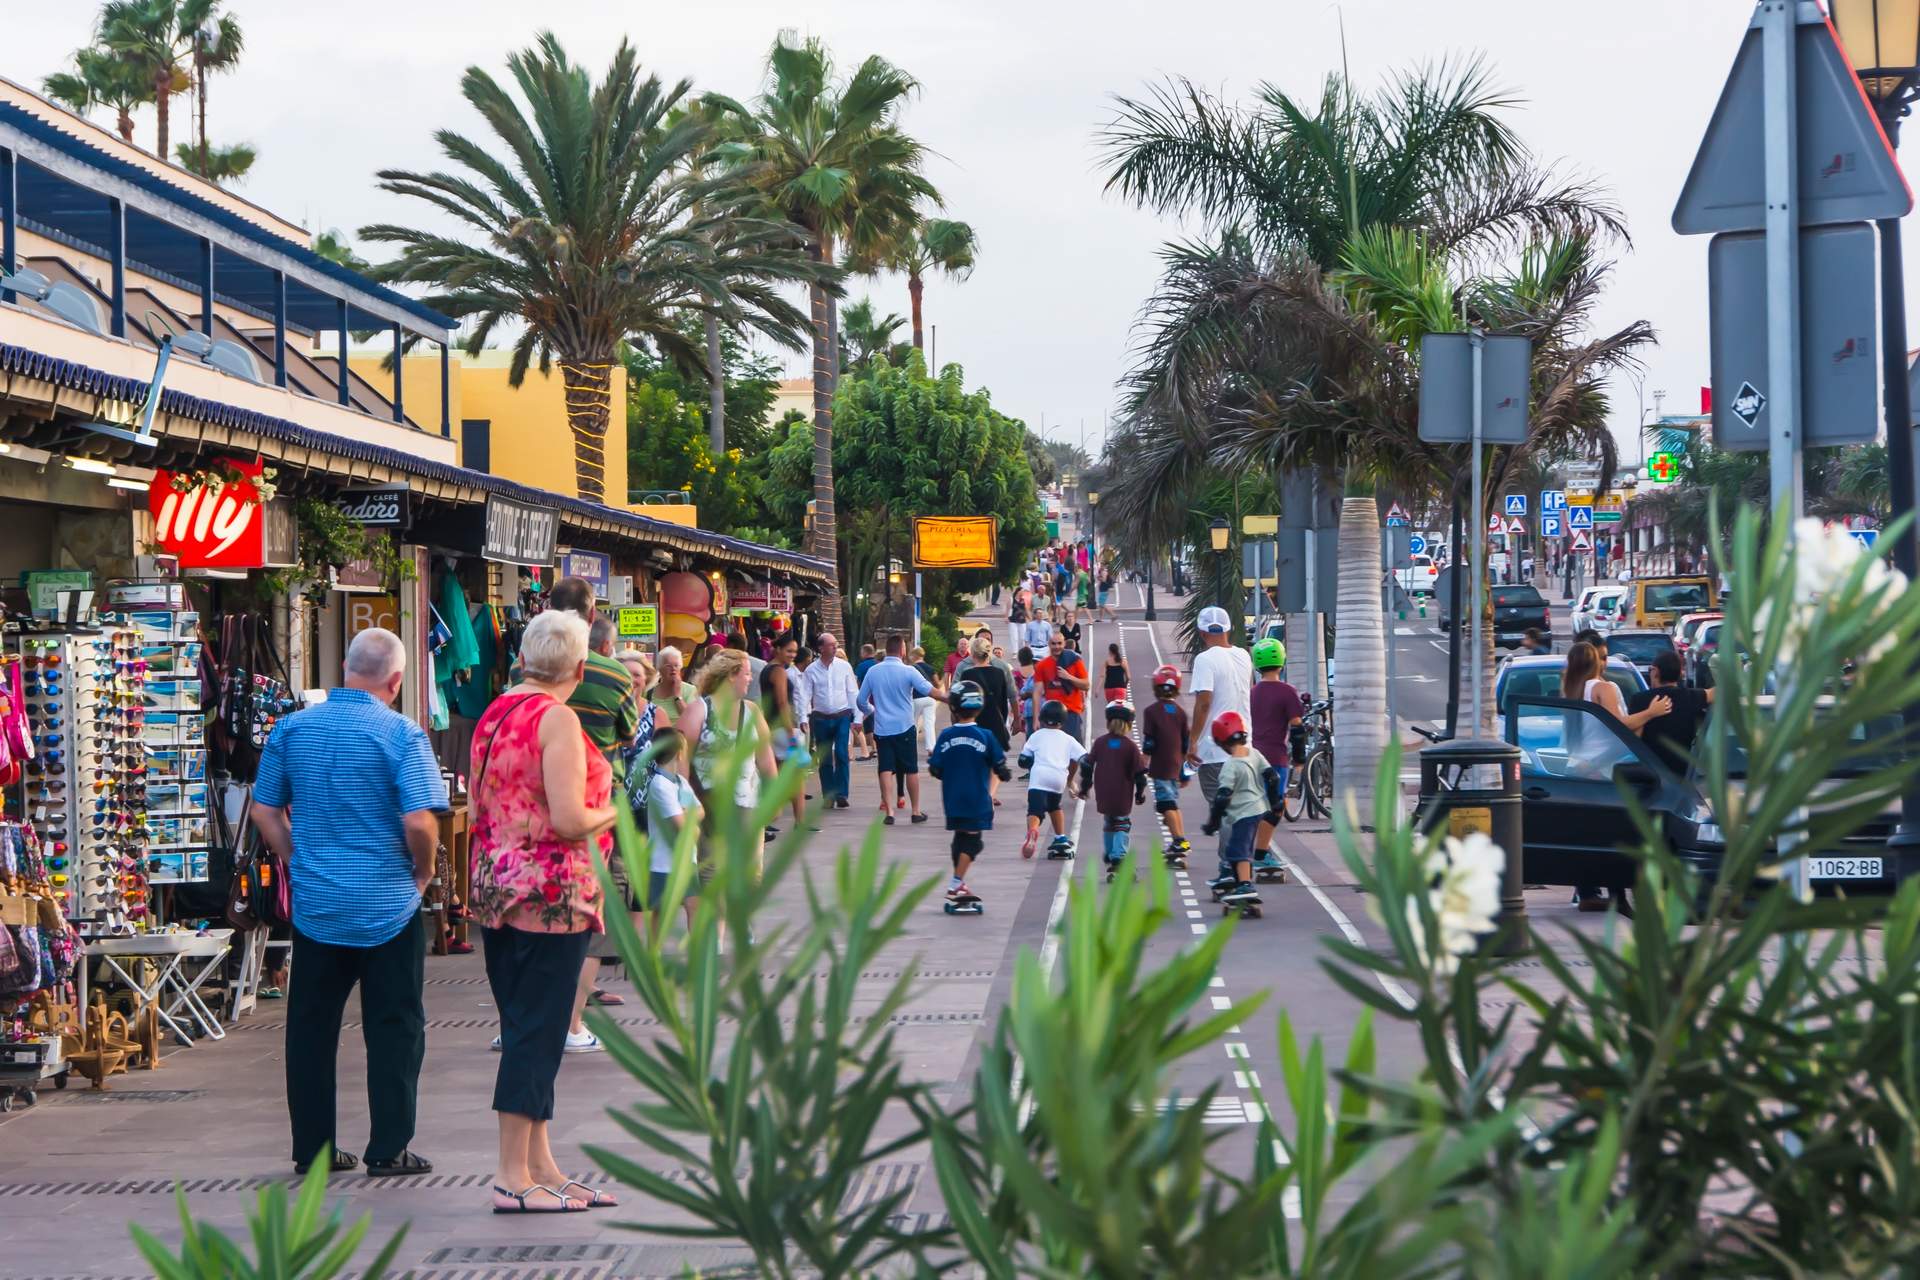 Canarias no descarta la tasa turística:  Estamos dispuestos a hablarlo 